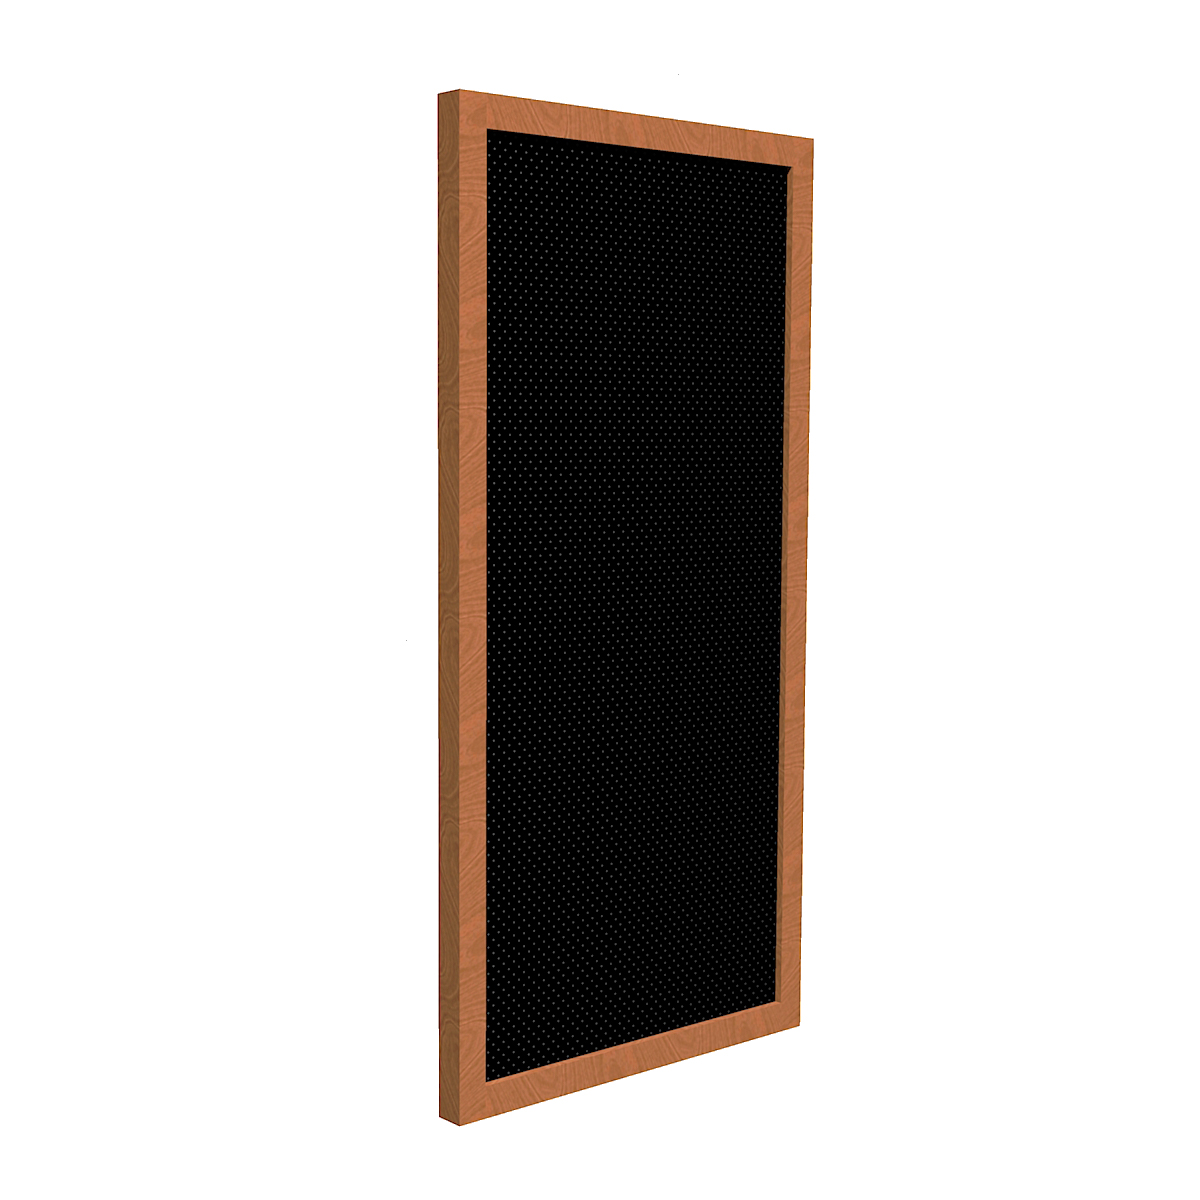 1pc 25cm x 25cm x 5cm acoustic foams panels sound insulation foam music parts HT 